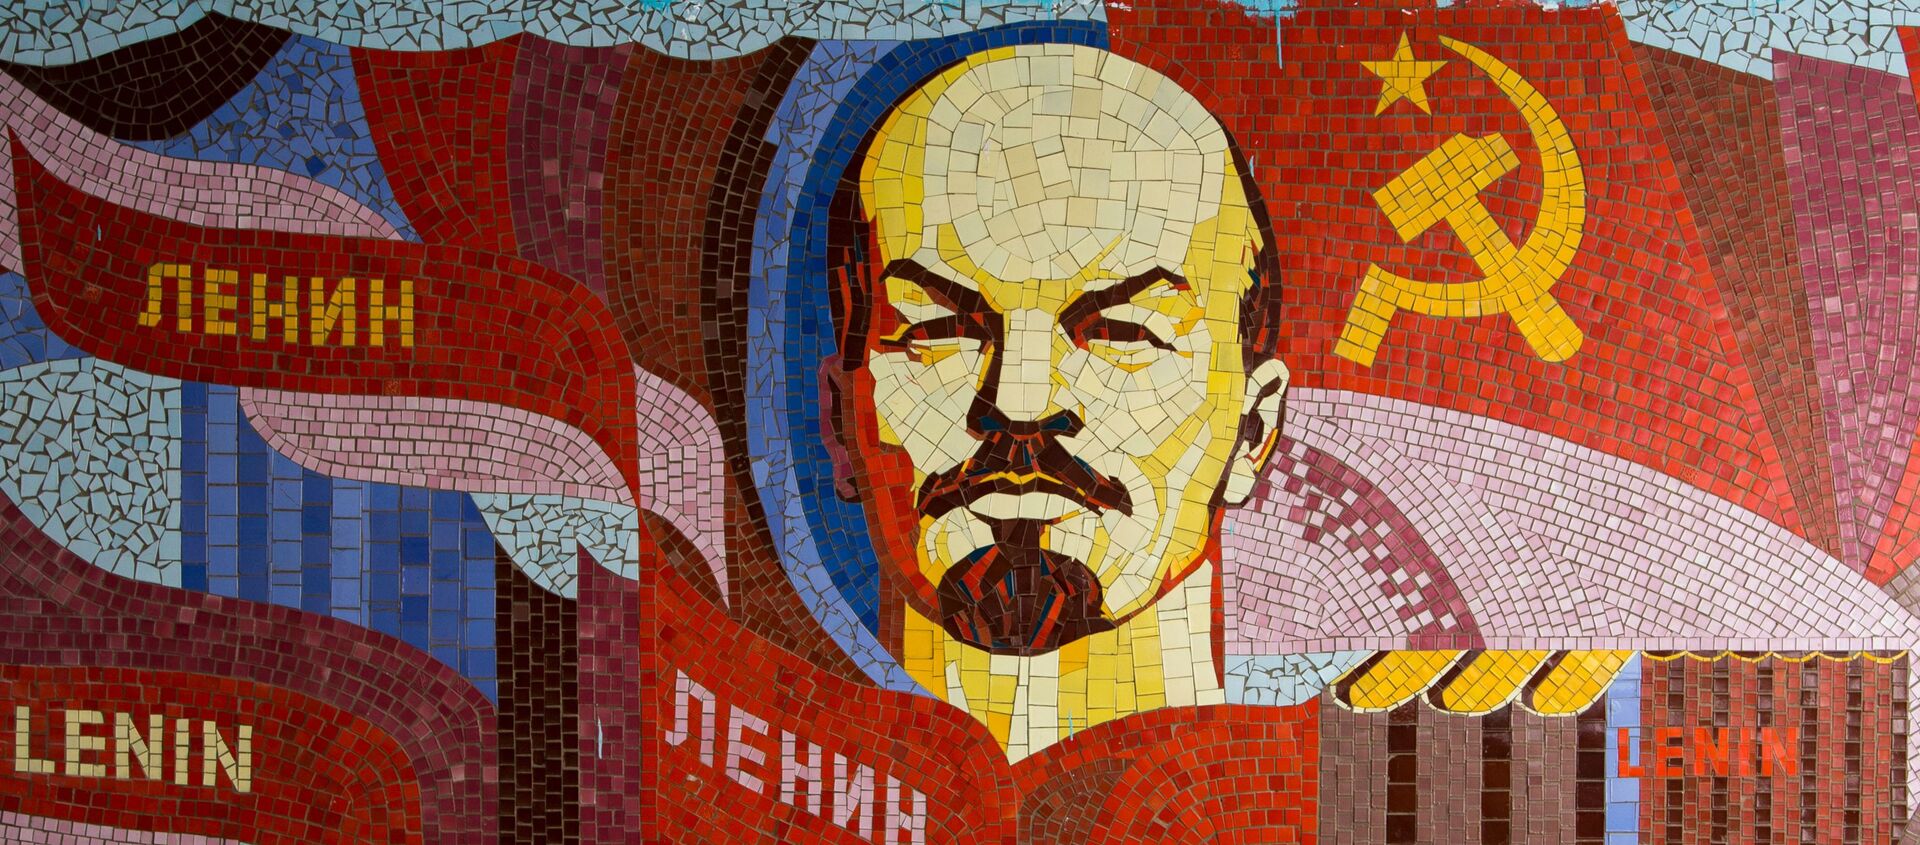  Un mosaico de Vladímir Lenin, líder de la revolución bolchevique - Sputnik Mundo, 1920, 22.04.2020